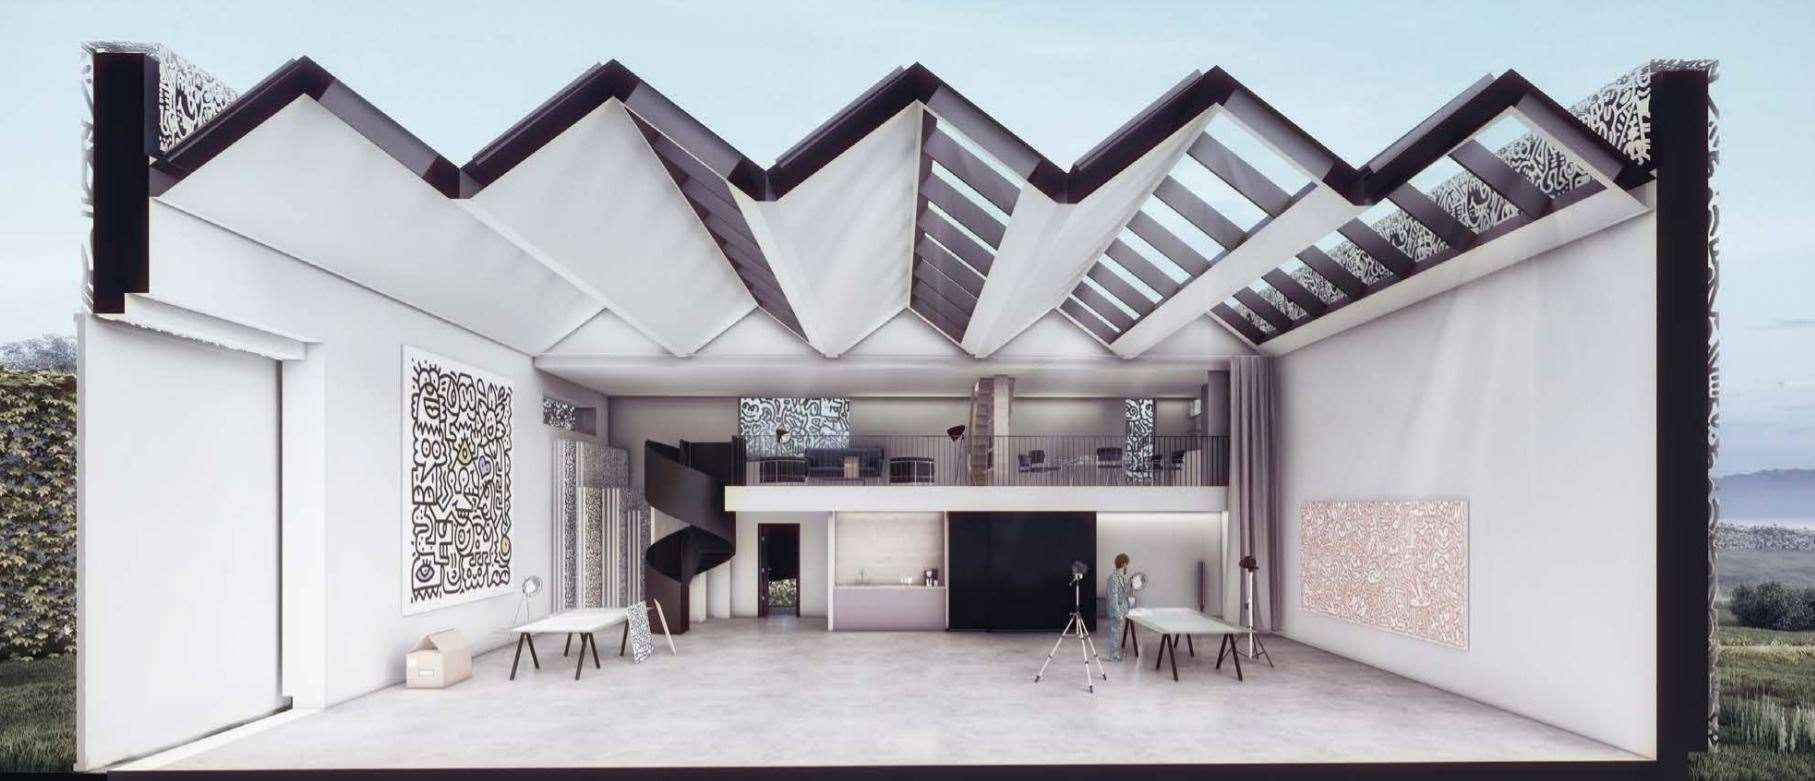 Mr Doodle's proposed new studio in Tenterden. Picture: Hollaway Studio